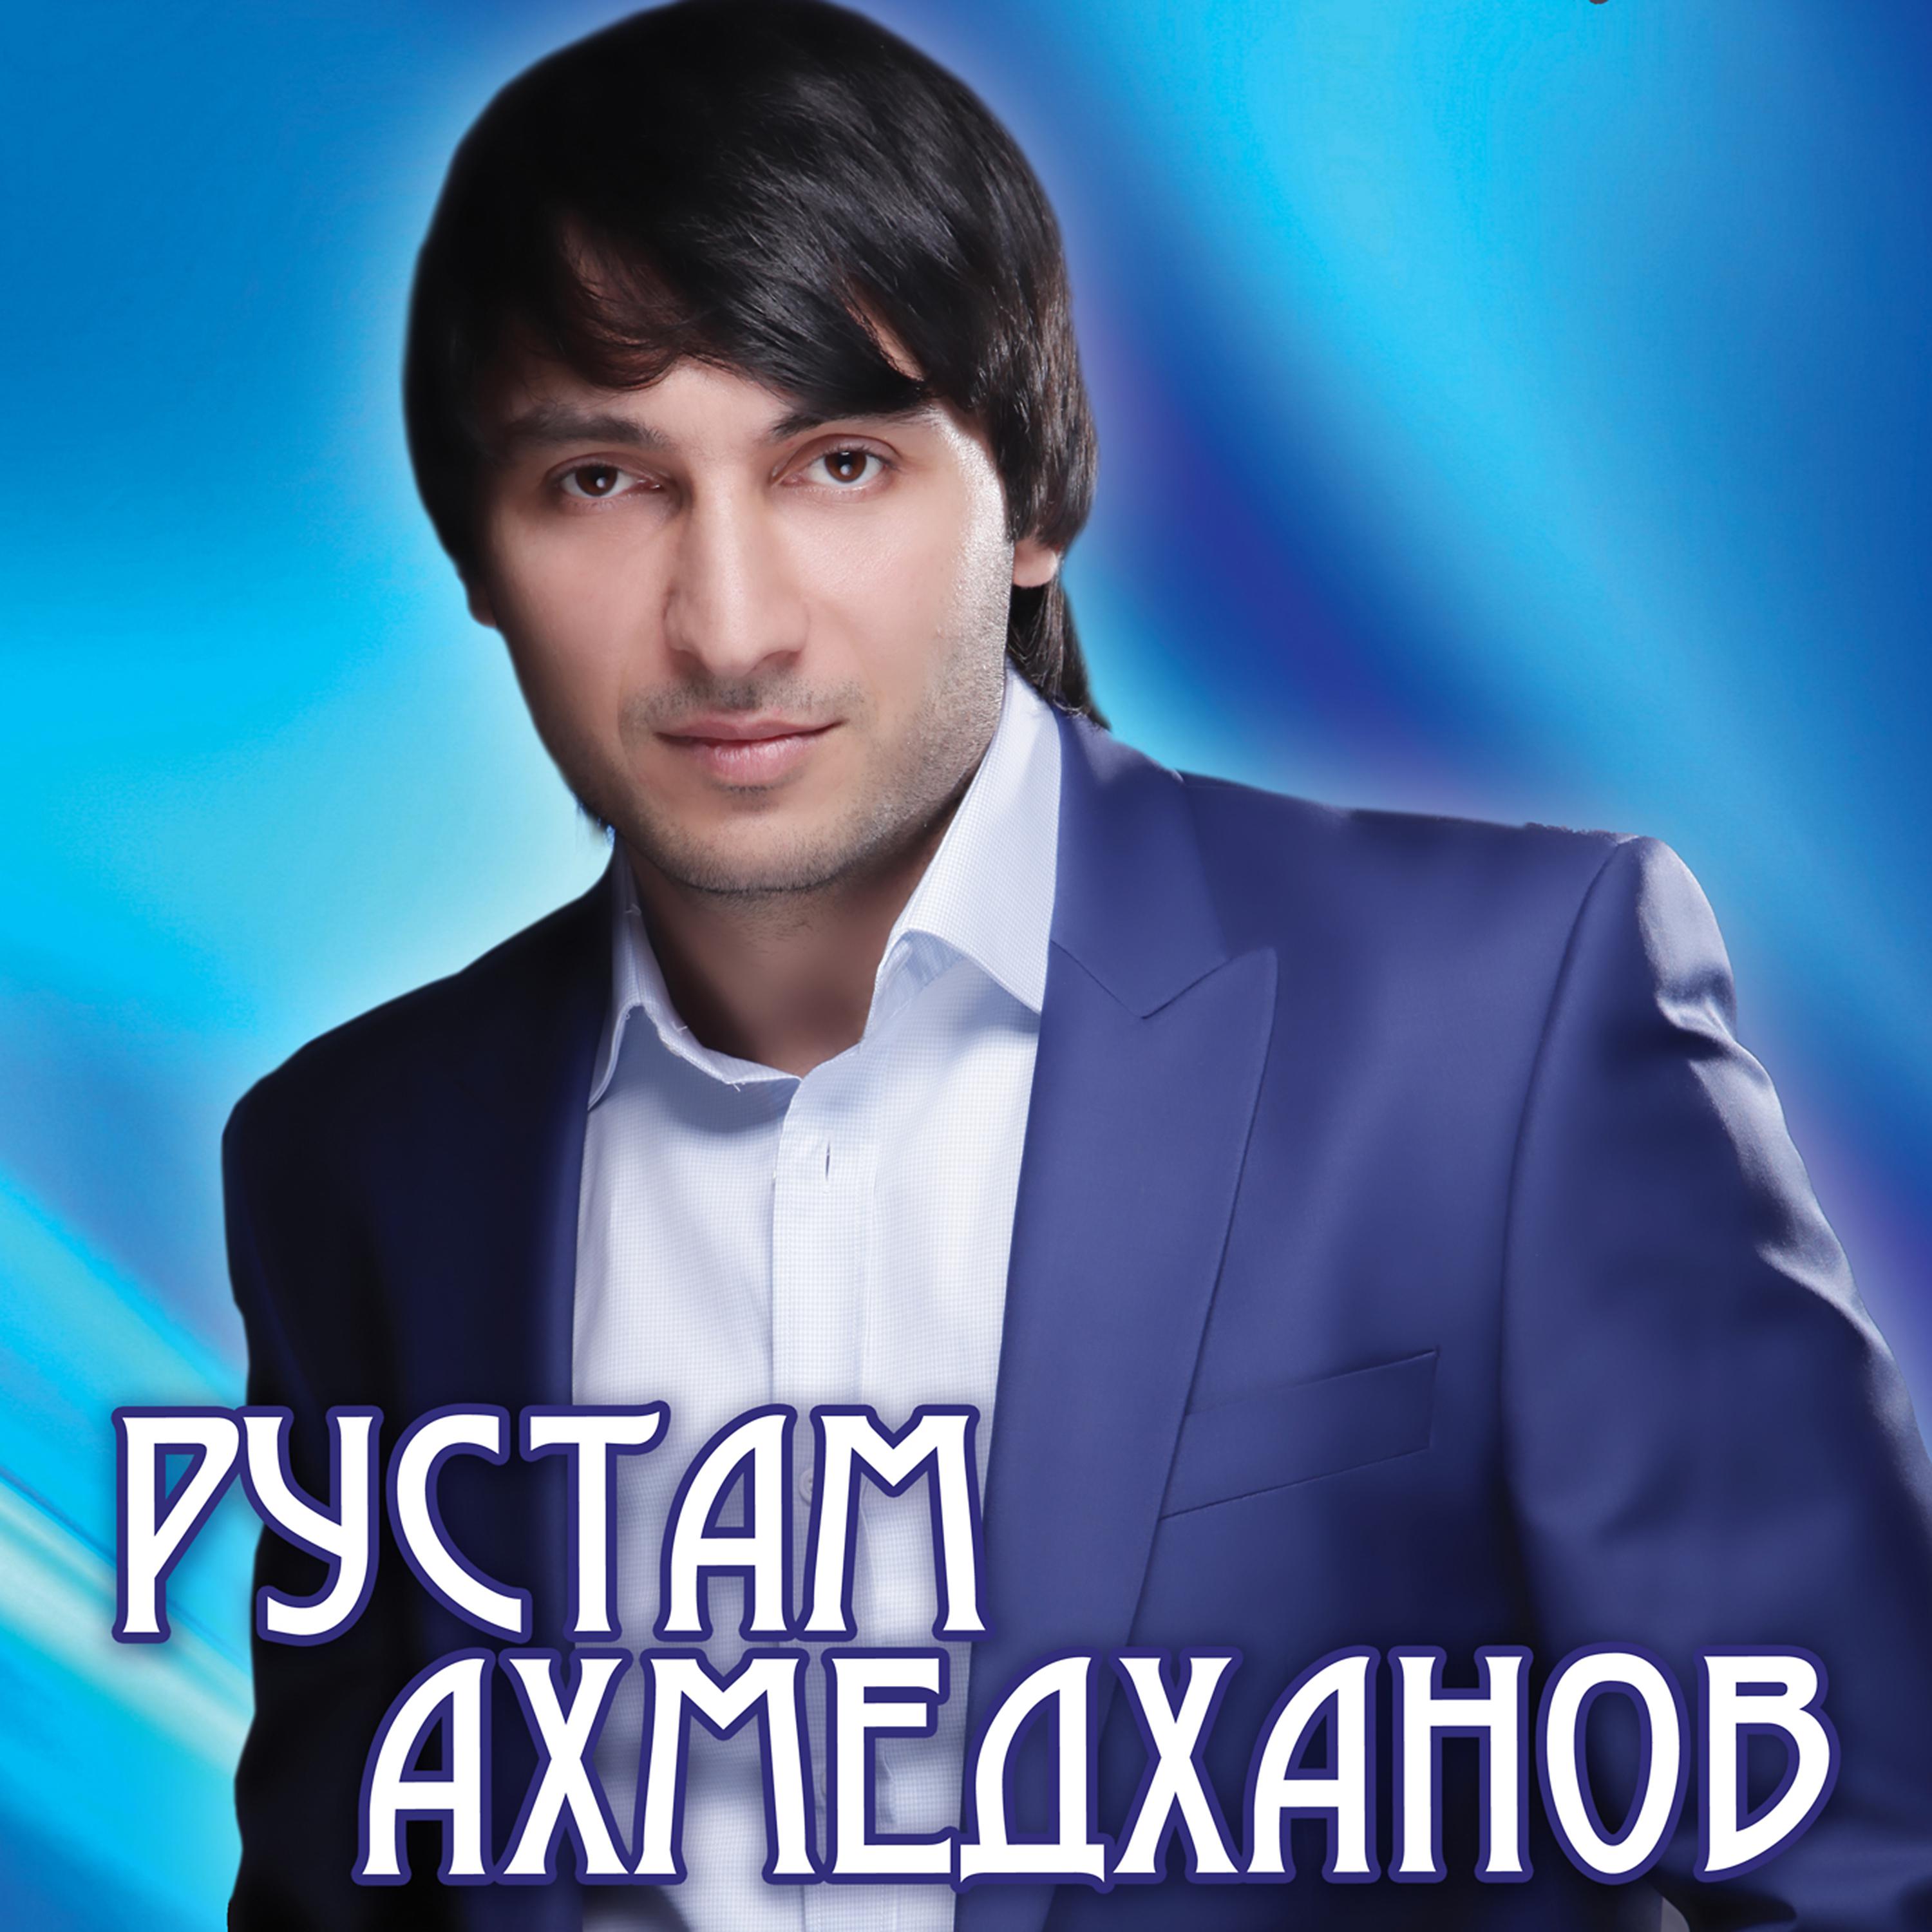 Слушать кавказская музыку популярные. Кумыкский певец Ахмедханов.